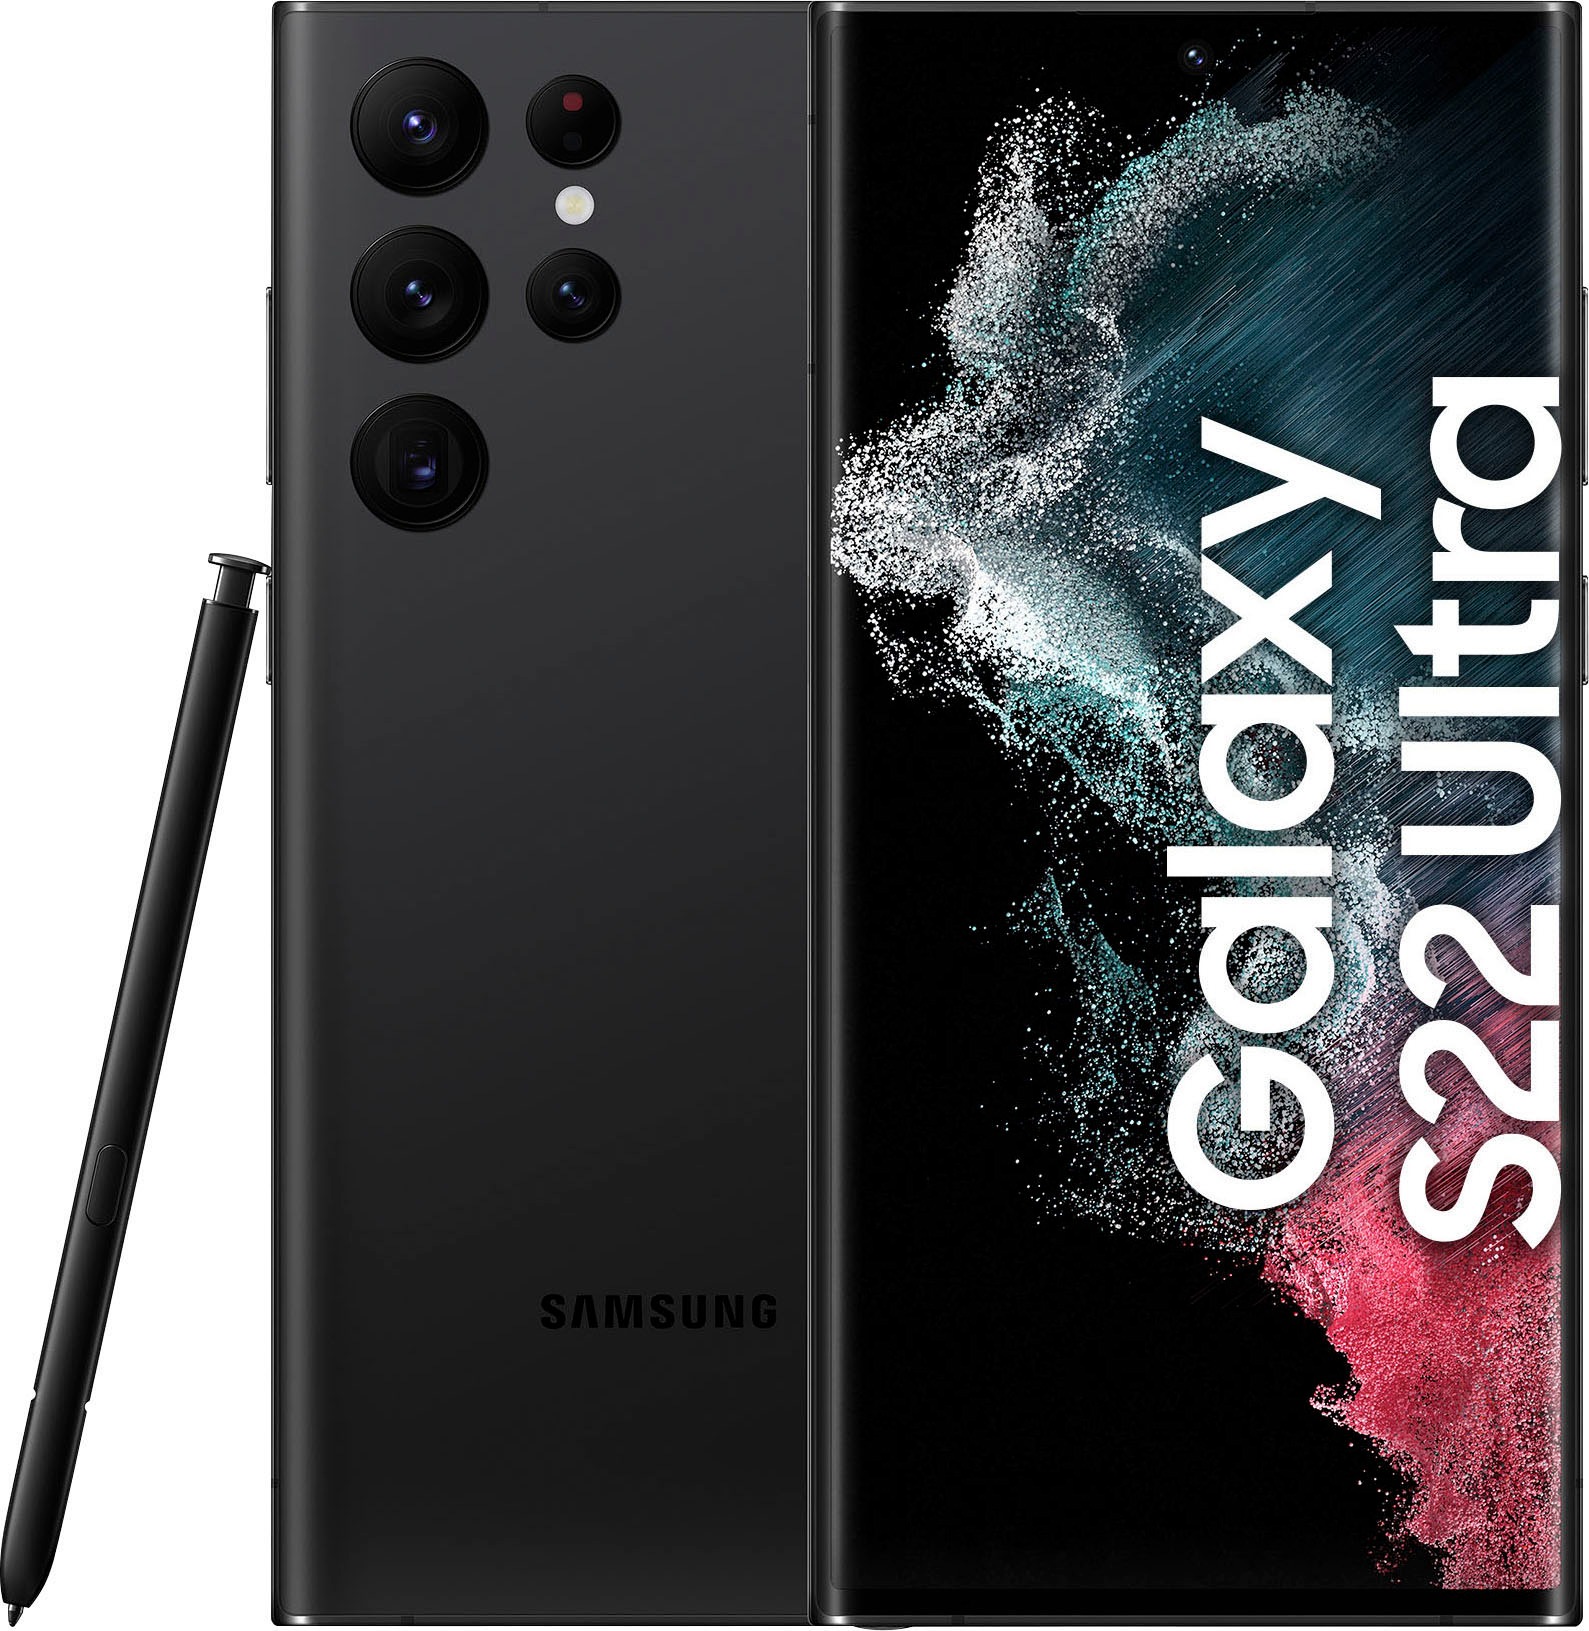 Samsung Smartphone »Galaxy S22 Ultra«, Green, 17,31 cm/6,8 Zoll, 256 GB  Speicherplatz, 108 MP Kamera auf Raten kaufen